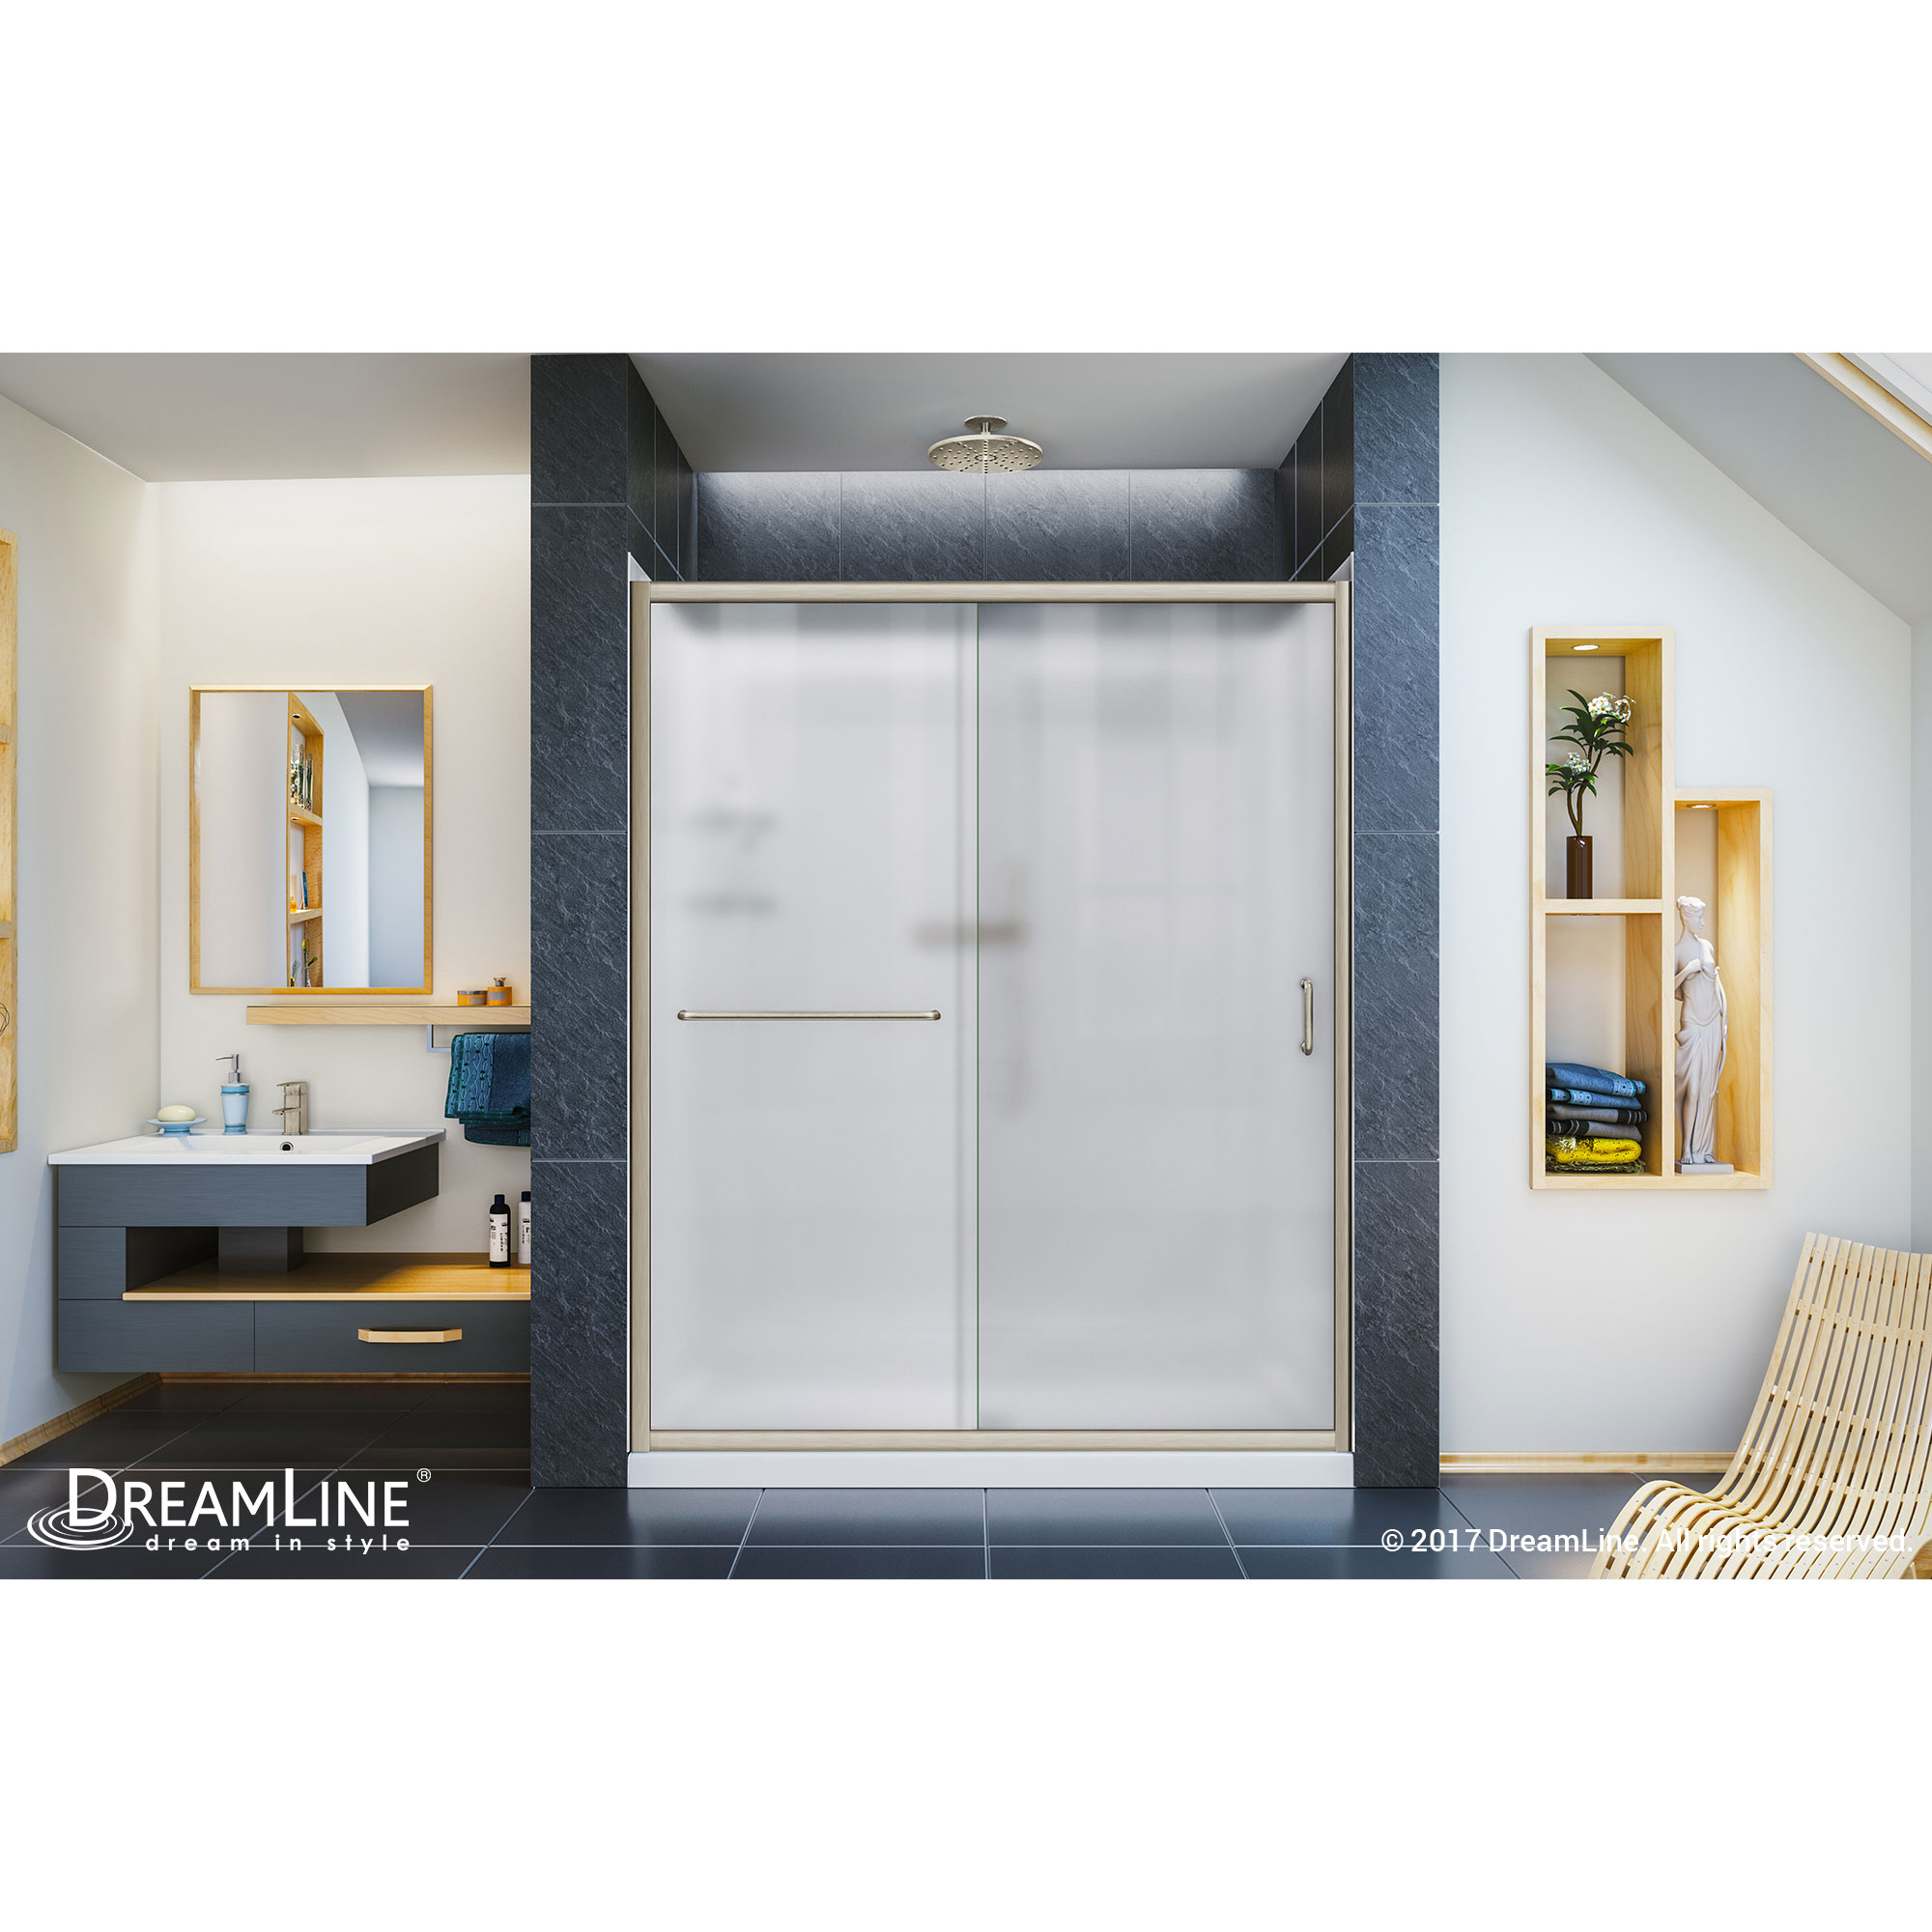 Infinity-Z Frameless Sliding Shower Door, 36" by 60" Shower Base & QWALL-5 Shower Backwall